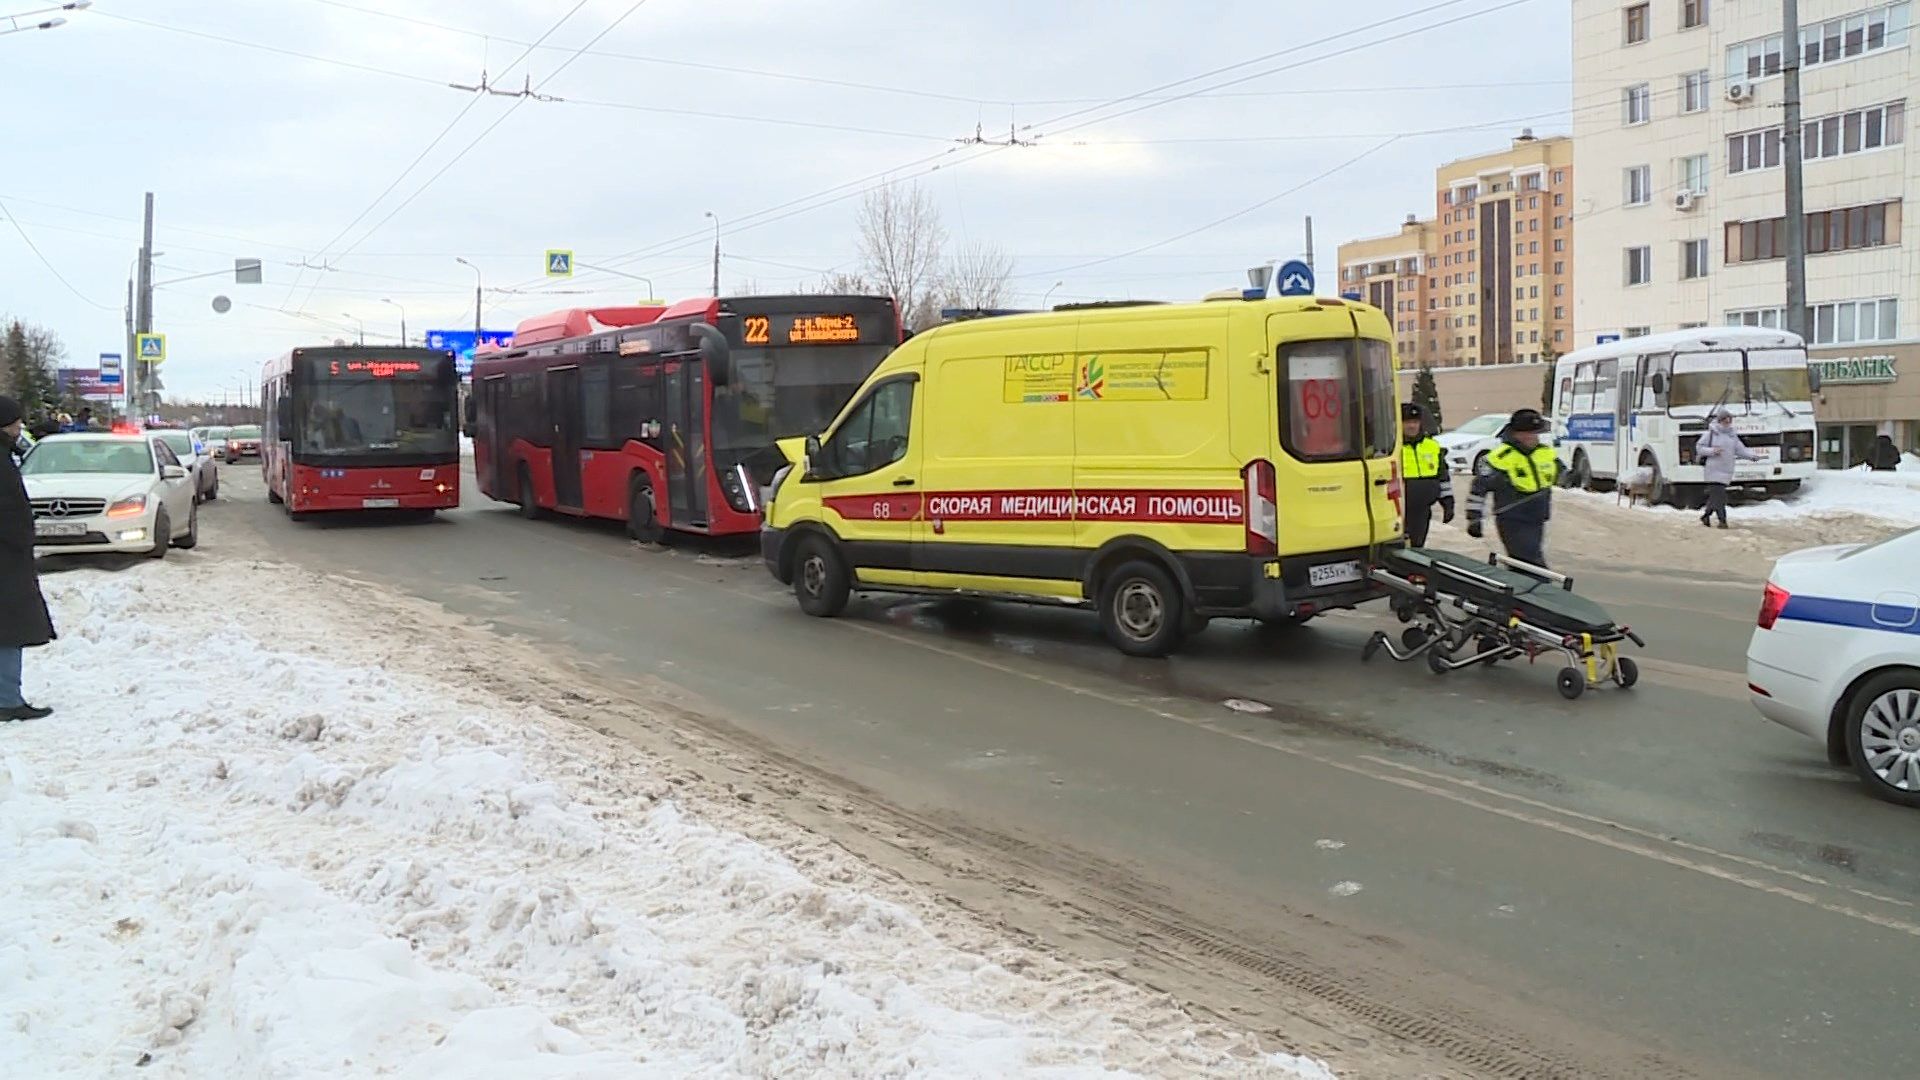 Стали известны подробности аварии с автобусом и скорой в Казани, в которой скончалась пациентка